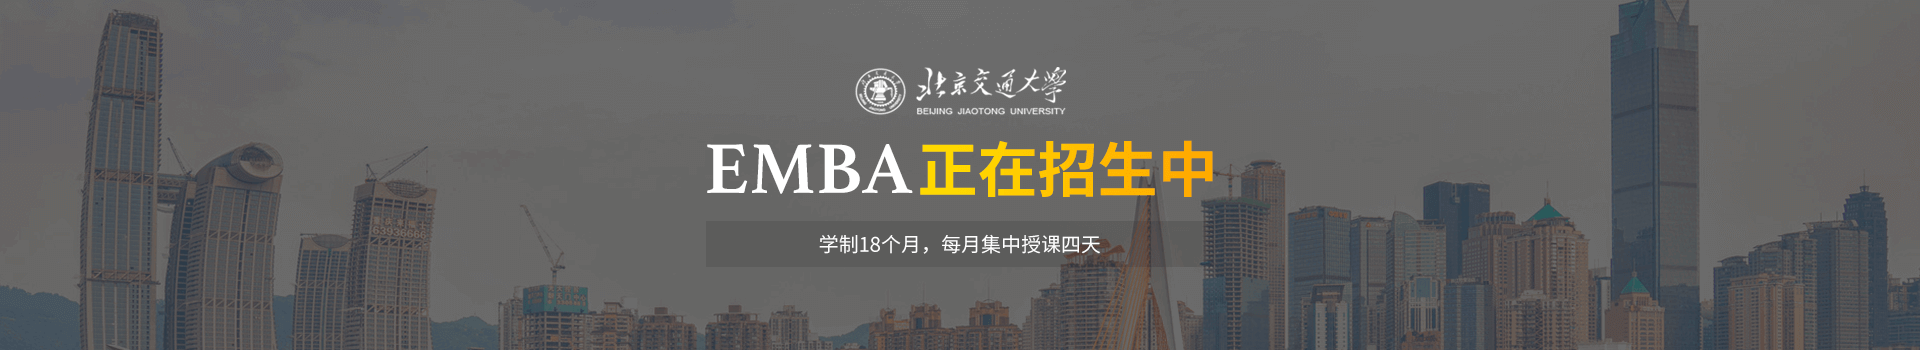 北京交通大学经济管理学院高级工商管理EMBA研修班招生简章